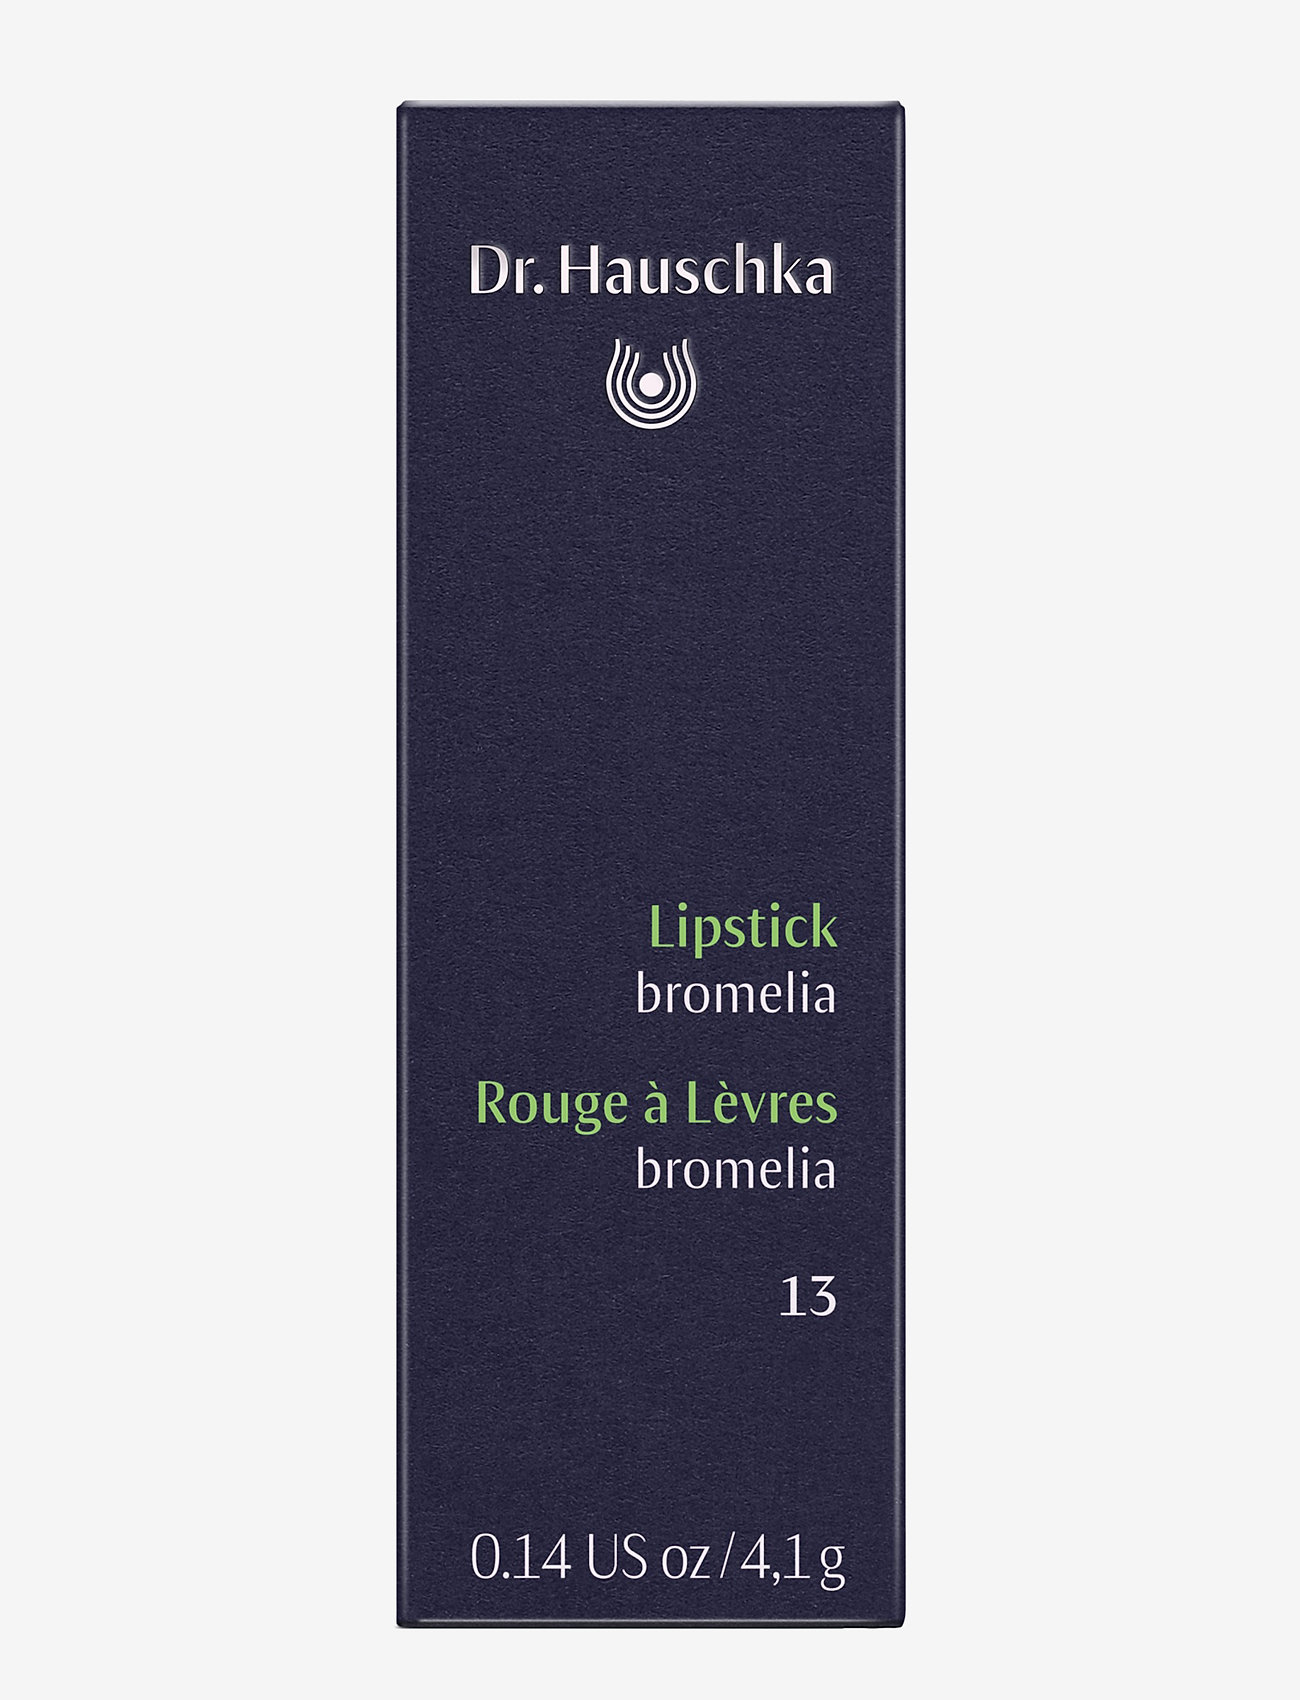 Dr. Hauschka - Lipstick 13 bromelia - leppestift - 13 bromelia - 1